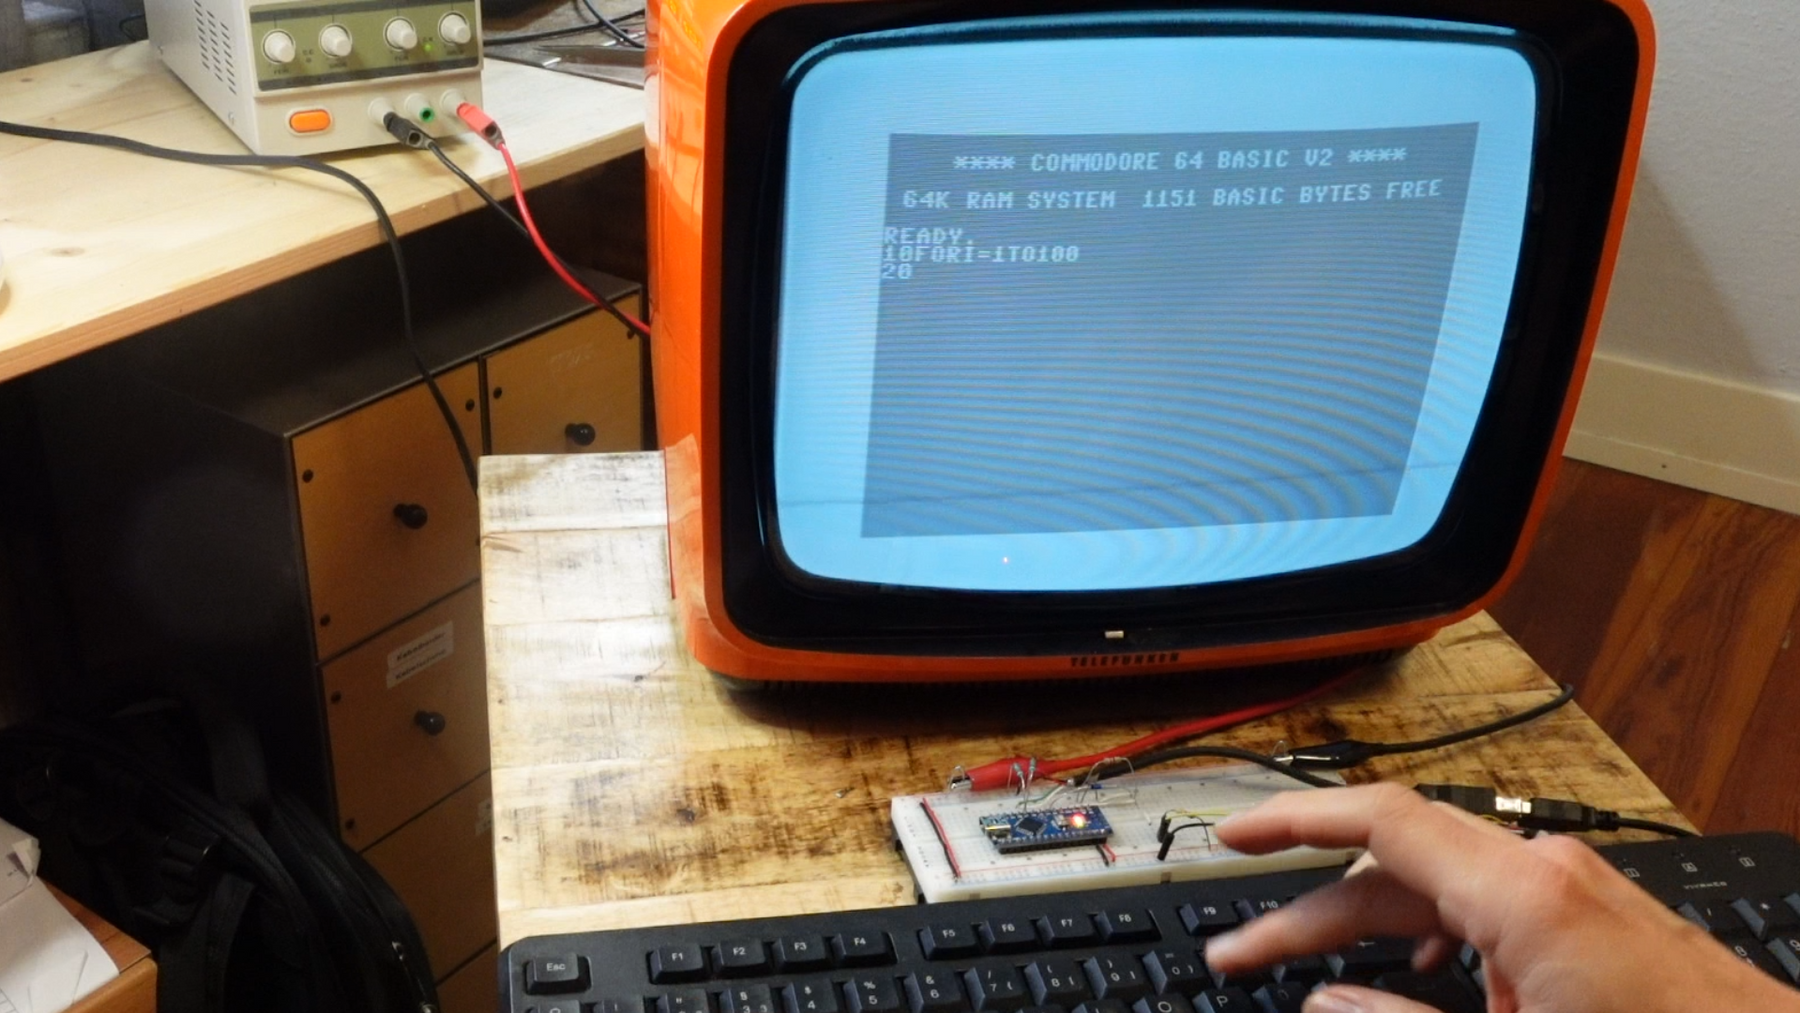 Arduino emulation of a Commodore C64